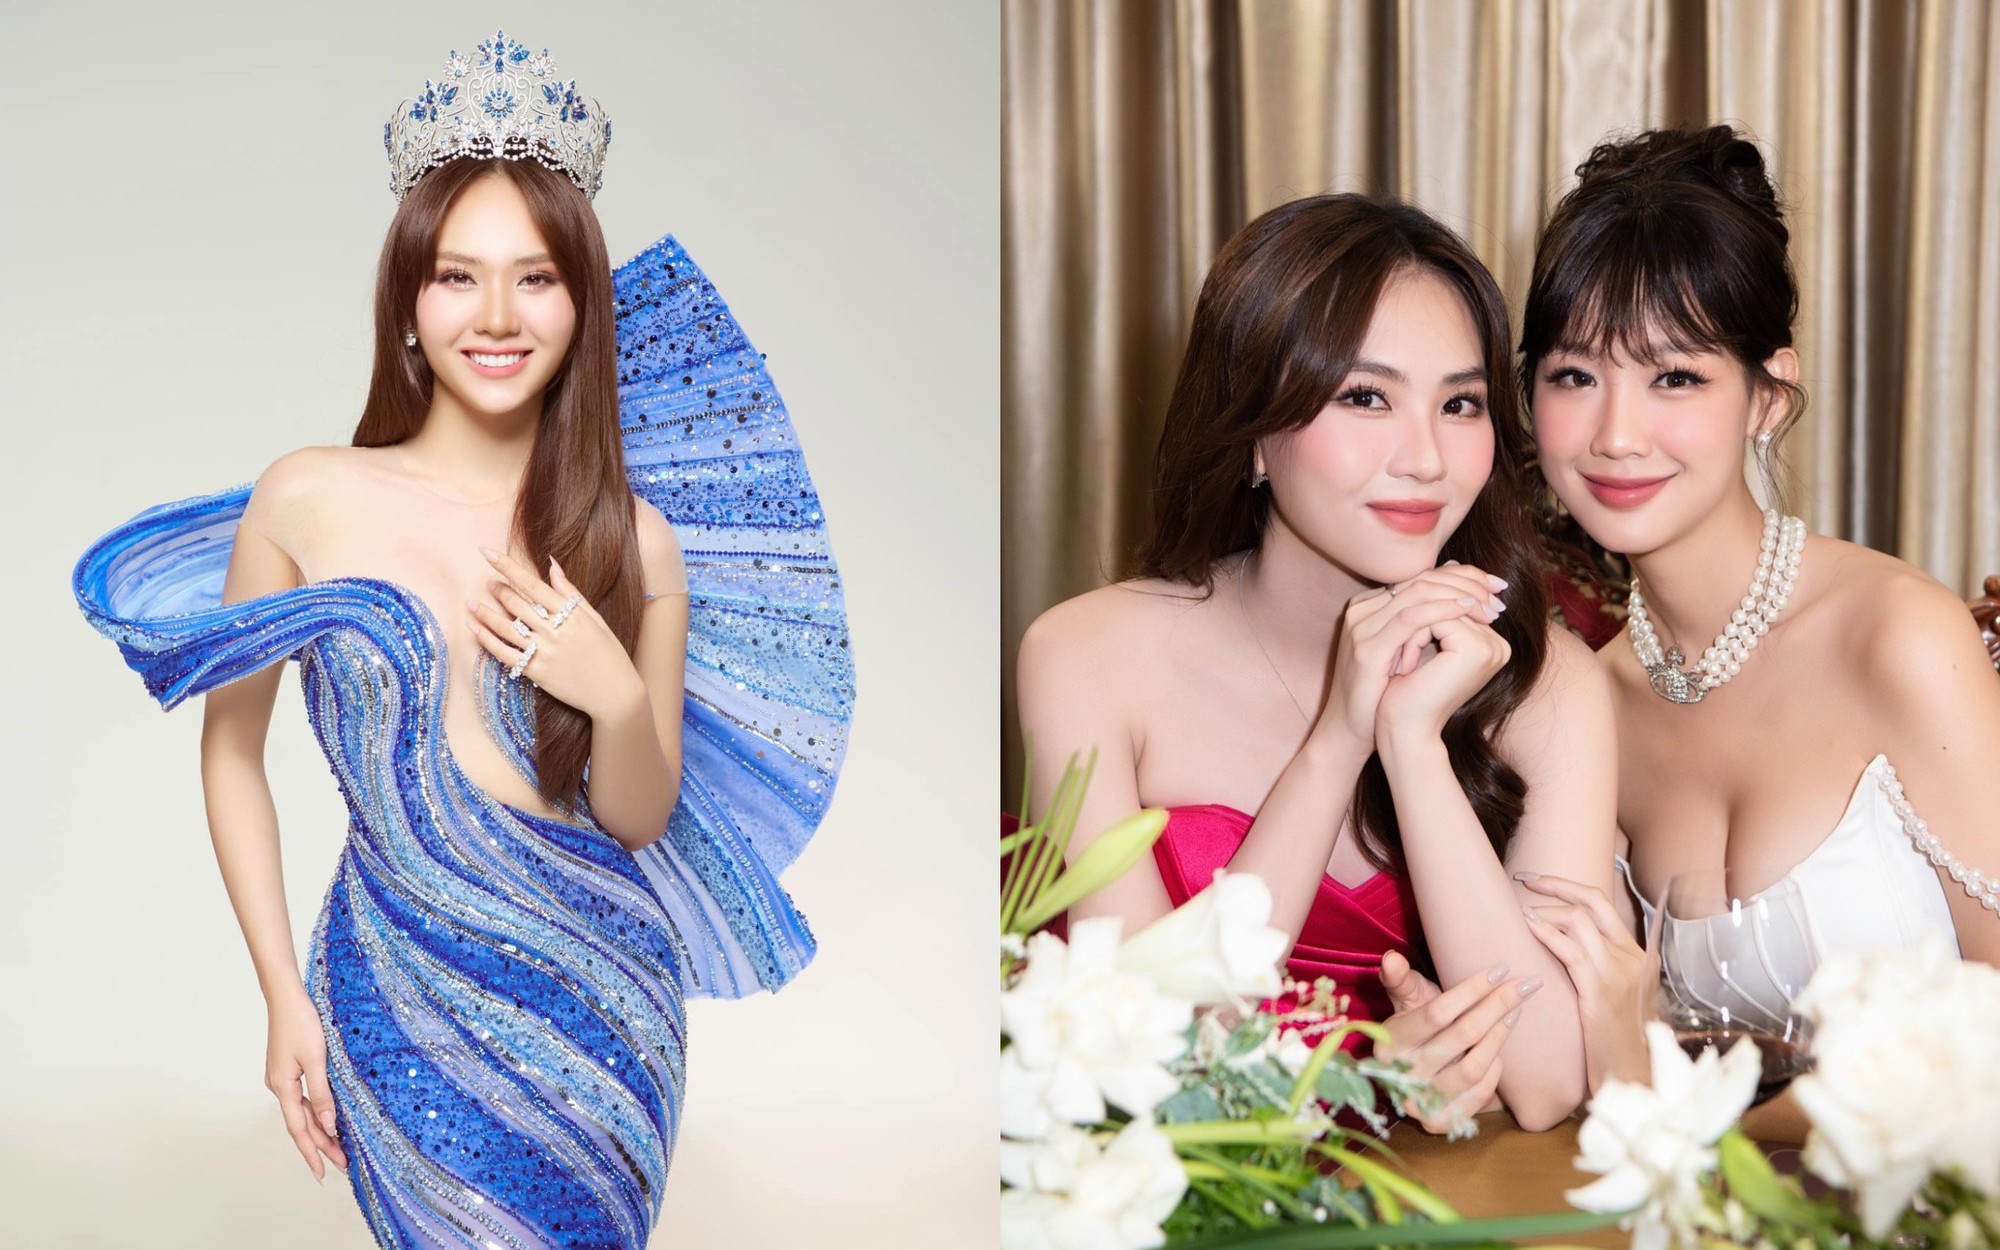 Hoa hậu Mai Phương: “Tôi không có gì phải áp lực, ghen tỵ với thành công của Hoa hậu Bảo Ngọc”